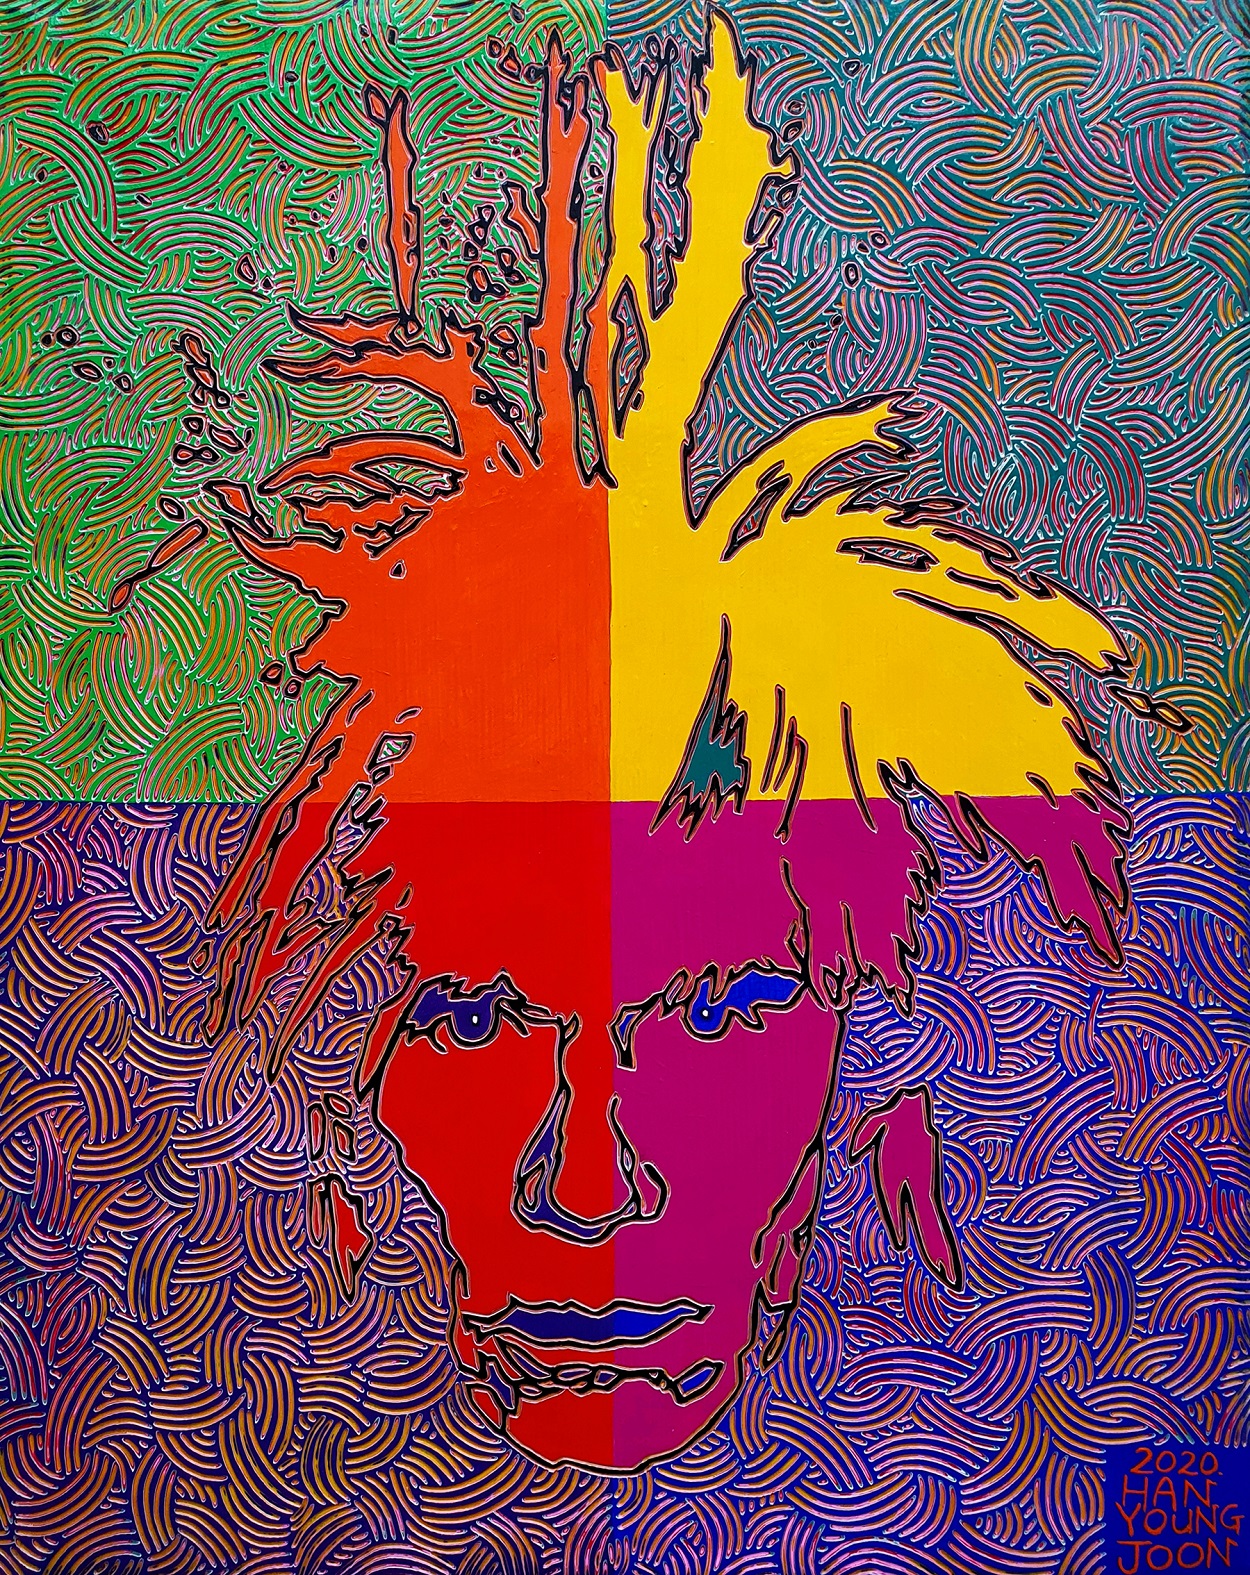 앤디 워홀(Andy Warhol), 40×50㎝ 끌 말러라이(Kkeulmalerei), Acrylic on Canvas, 2020